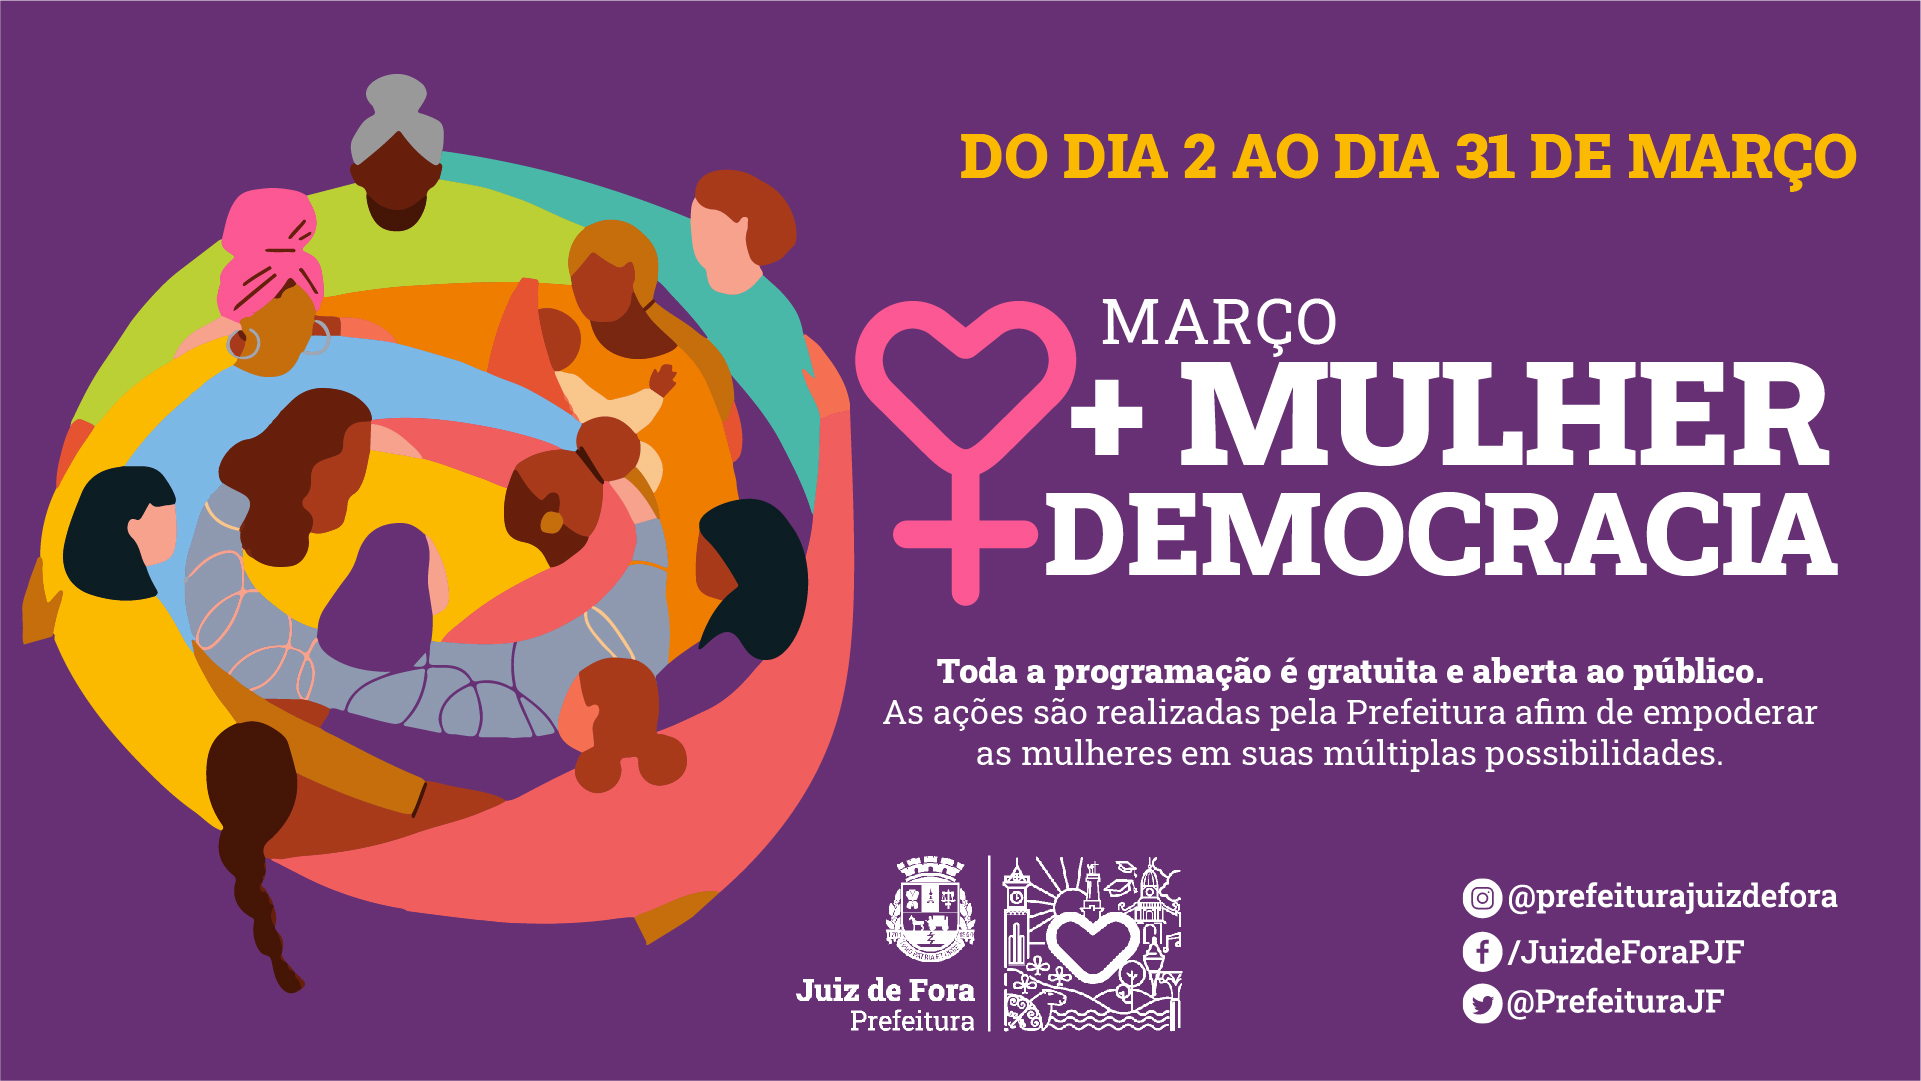 + Mulher + Democracia